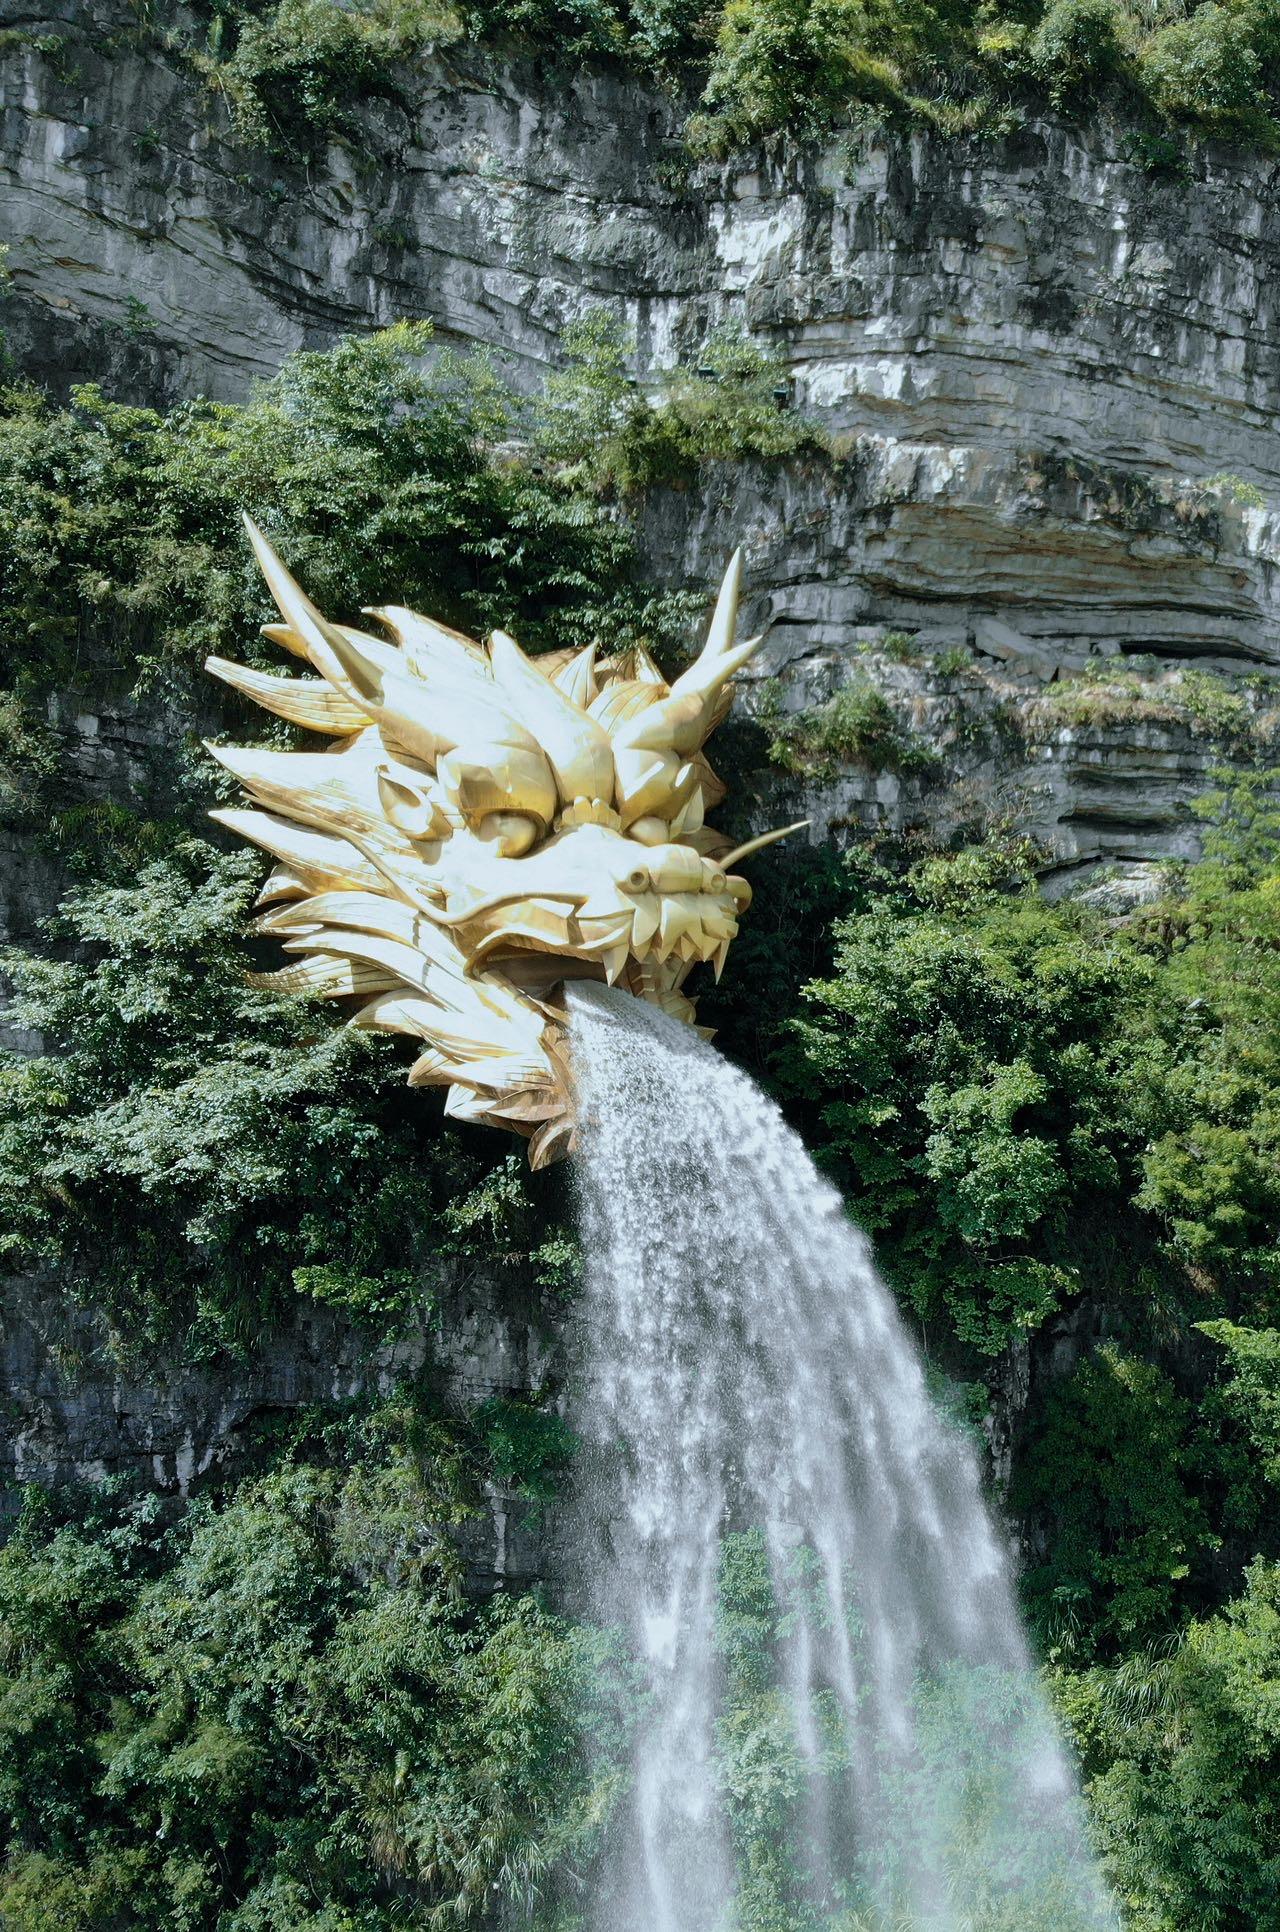 贵州绝壁黄金水龙头,12吨金龙喷泉,造价上千万